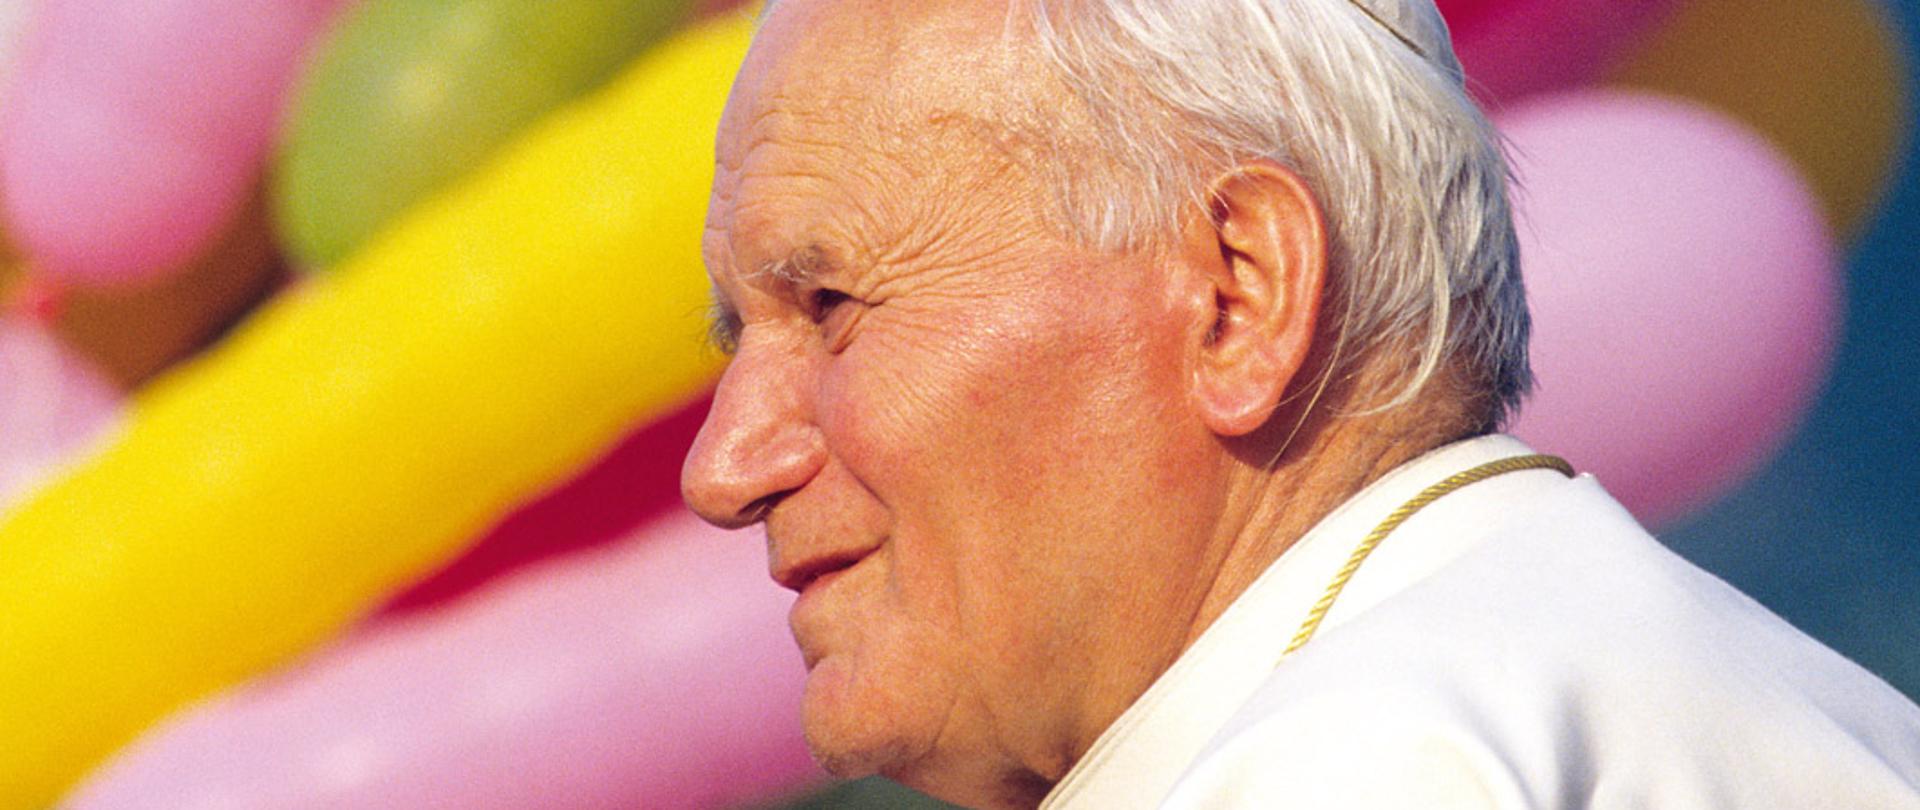 15.07.1990 Introd. Incontro del Papa Giovanni Paolo II con i giovani al campo sportivo.